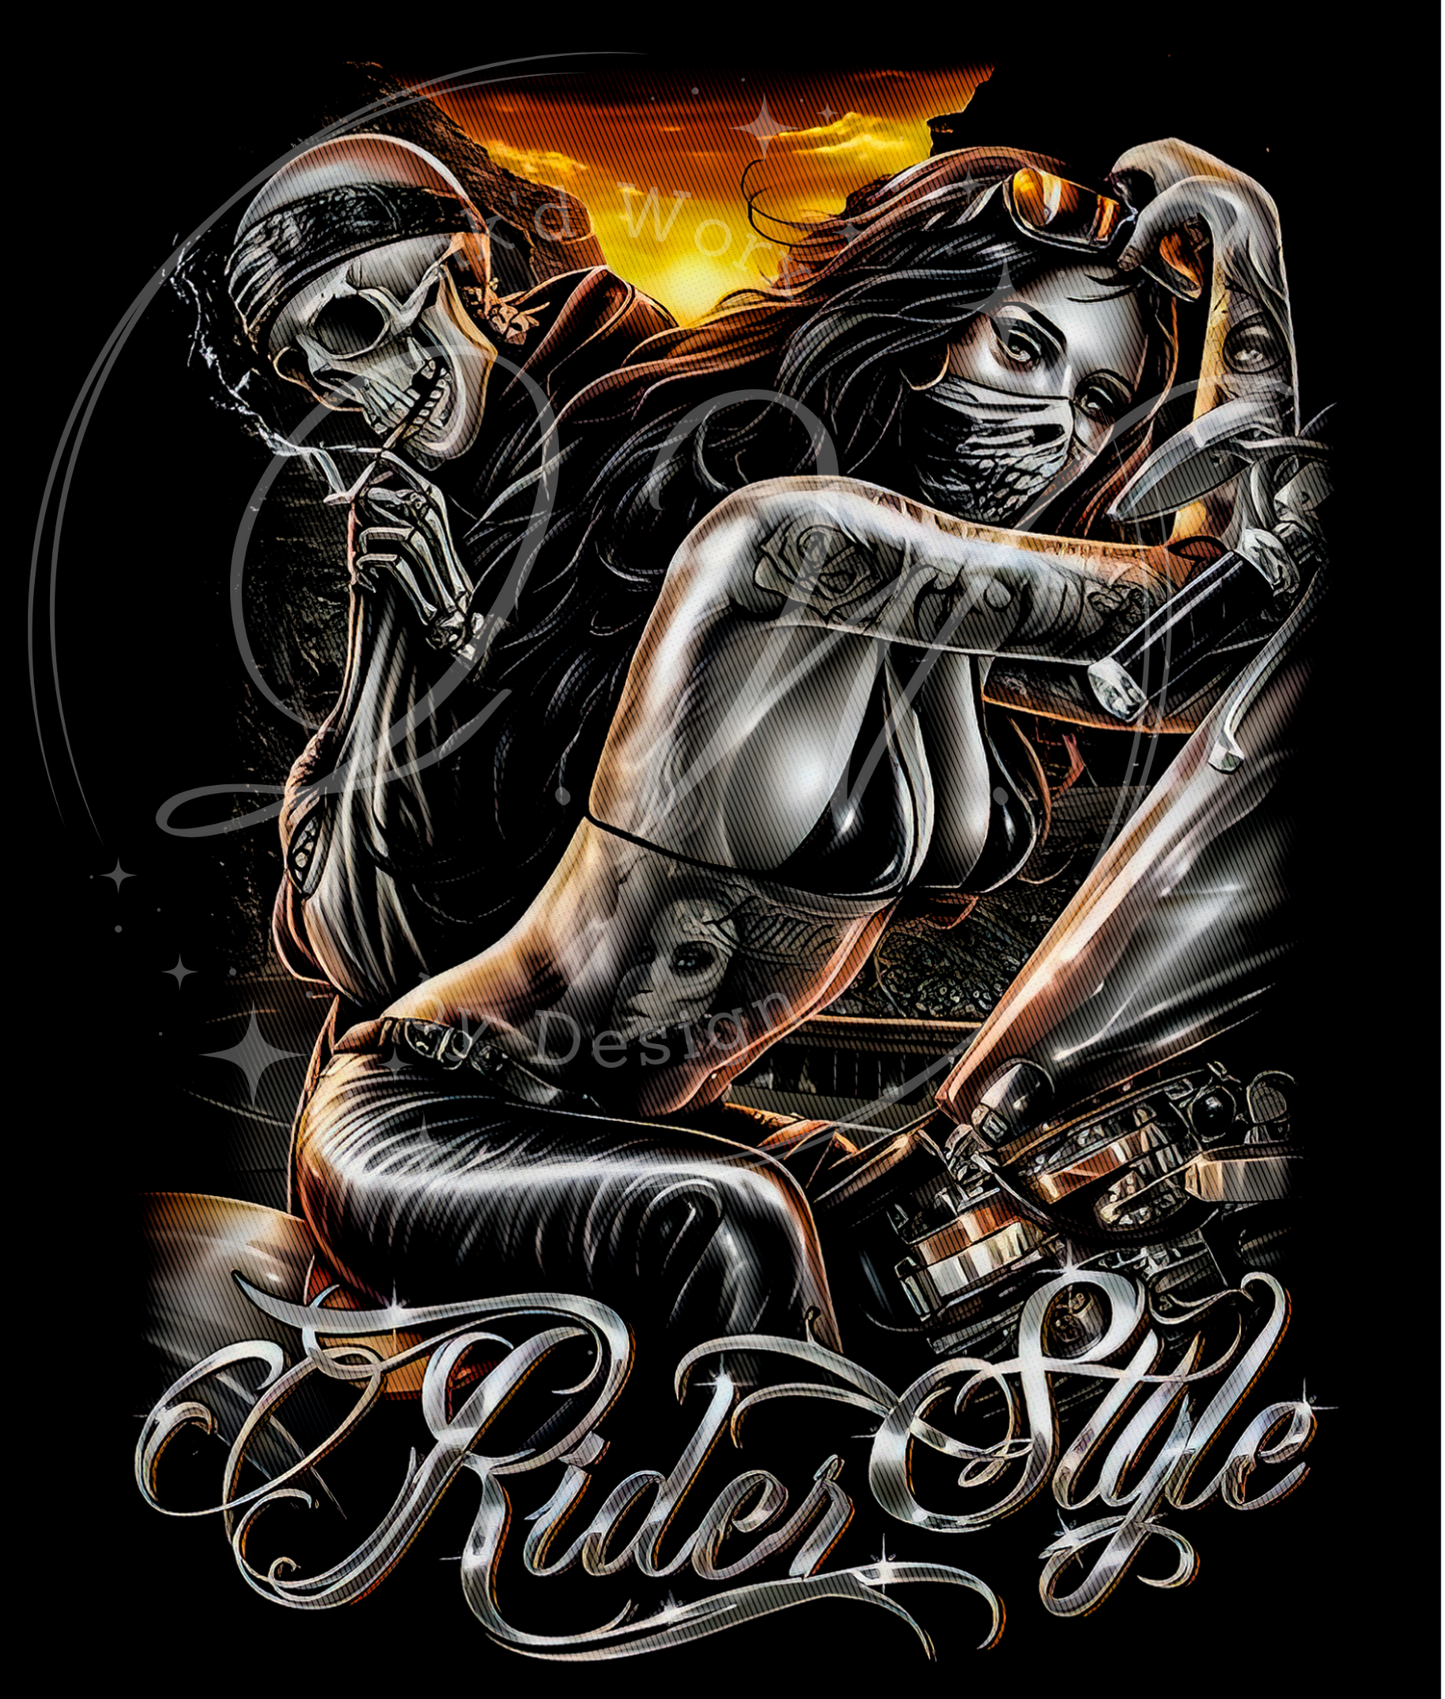 Valentine Ride or Die, Skull Biker, Valentine Race Bike Shop, Rider Style, Chicana